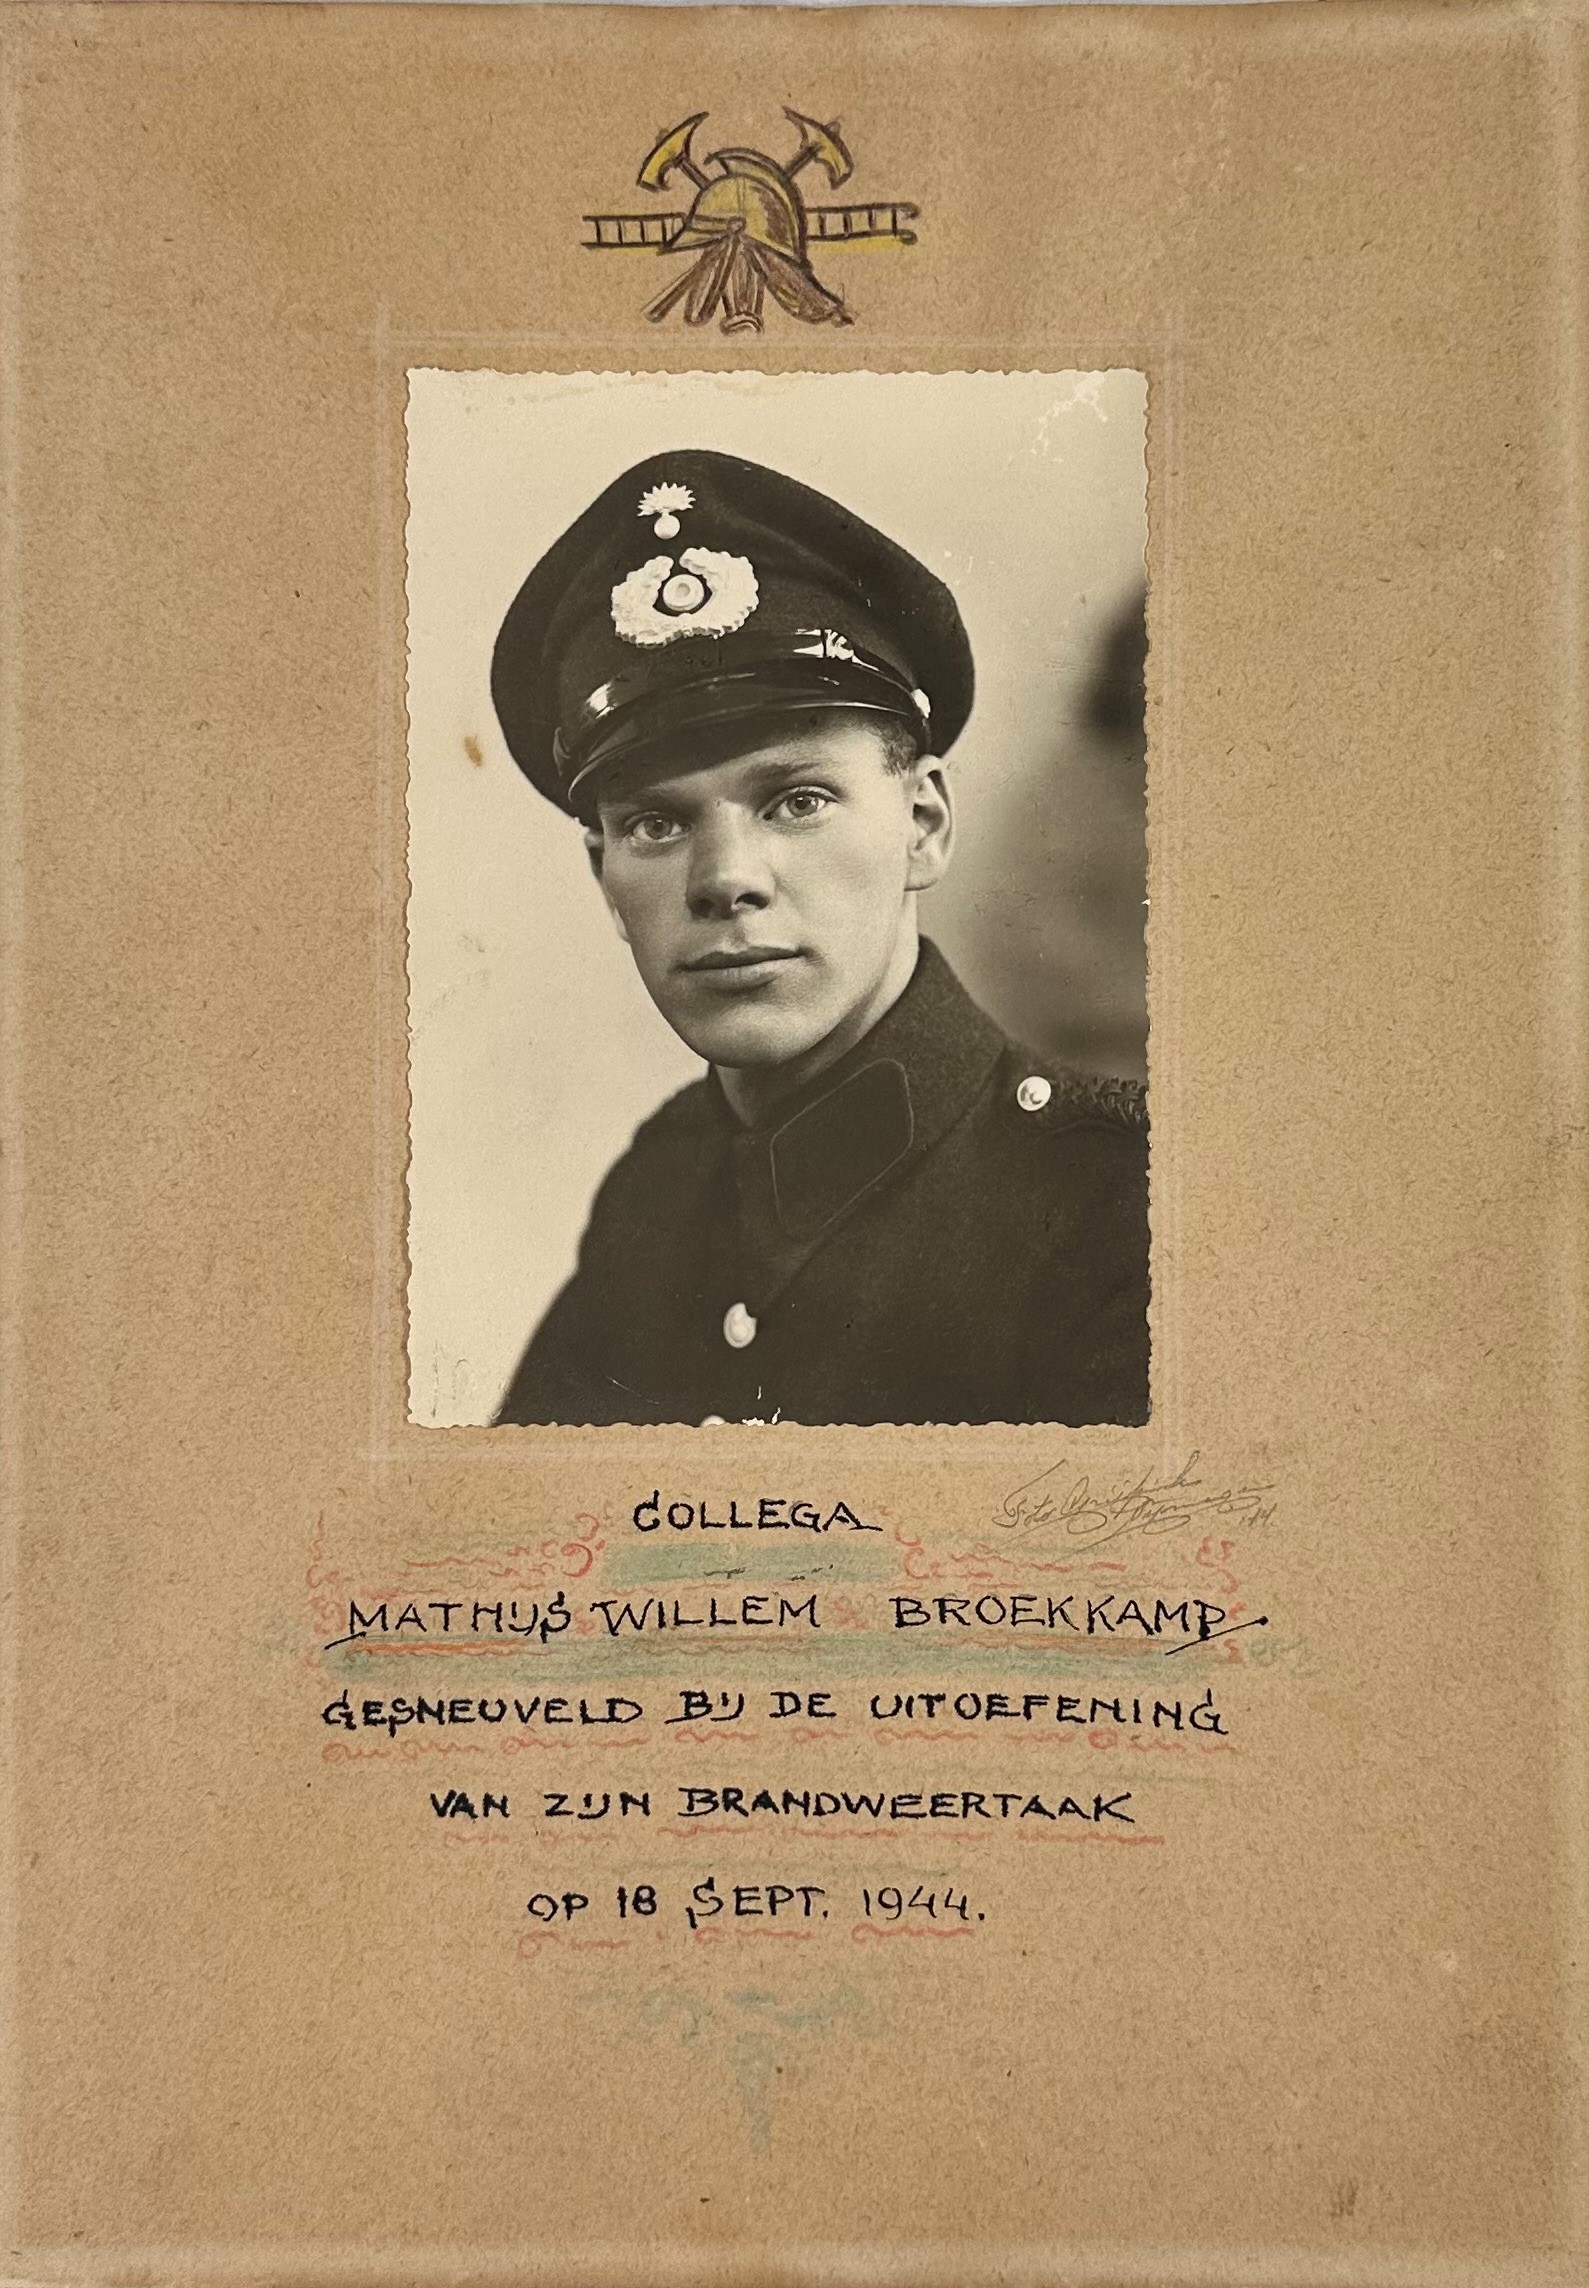 Foto in uniform van Mathijs Willem Broekkamp met de tekst: Collega Mathijs Willem Broekkamp. Gesneuveld bij de uitoefening van zijn brandweertaak op 18 sept. 1944.